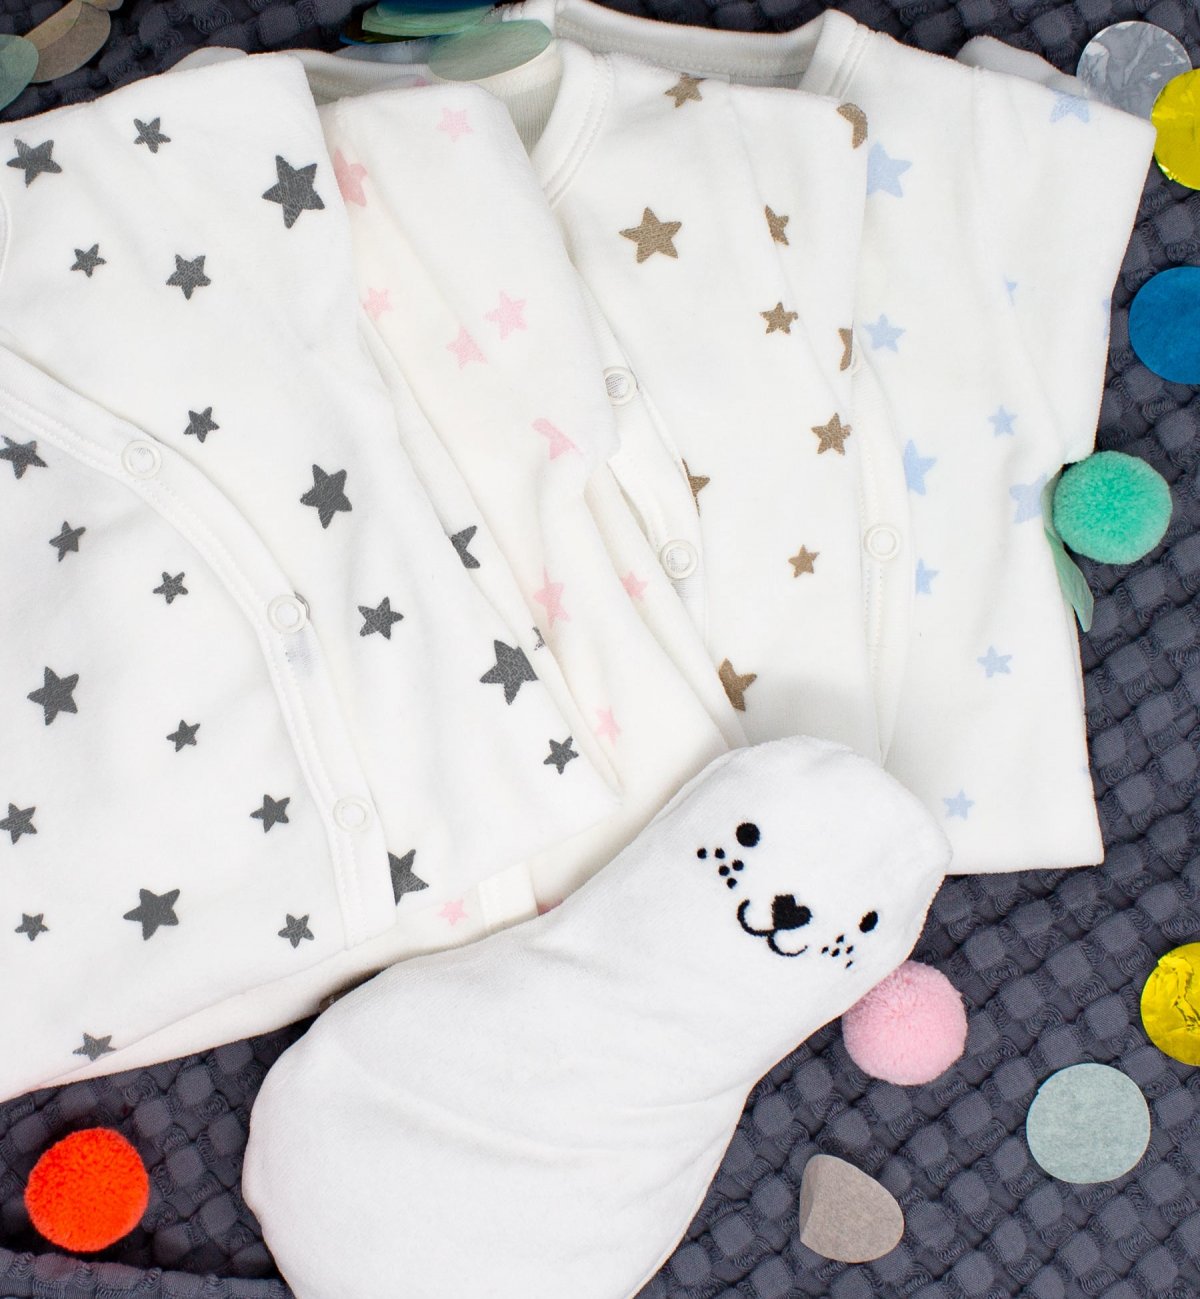 Pyjama bébé en Coton Bio imprimé étoiles - Kadolis